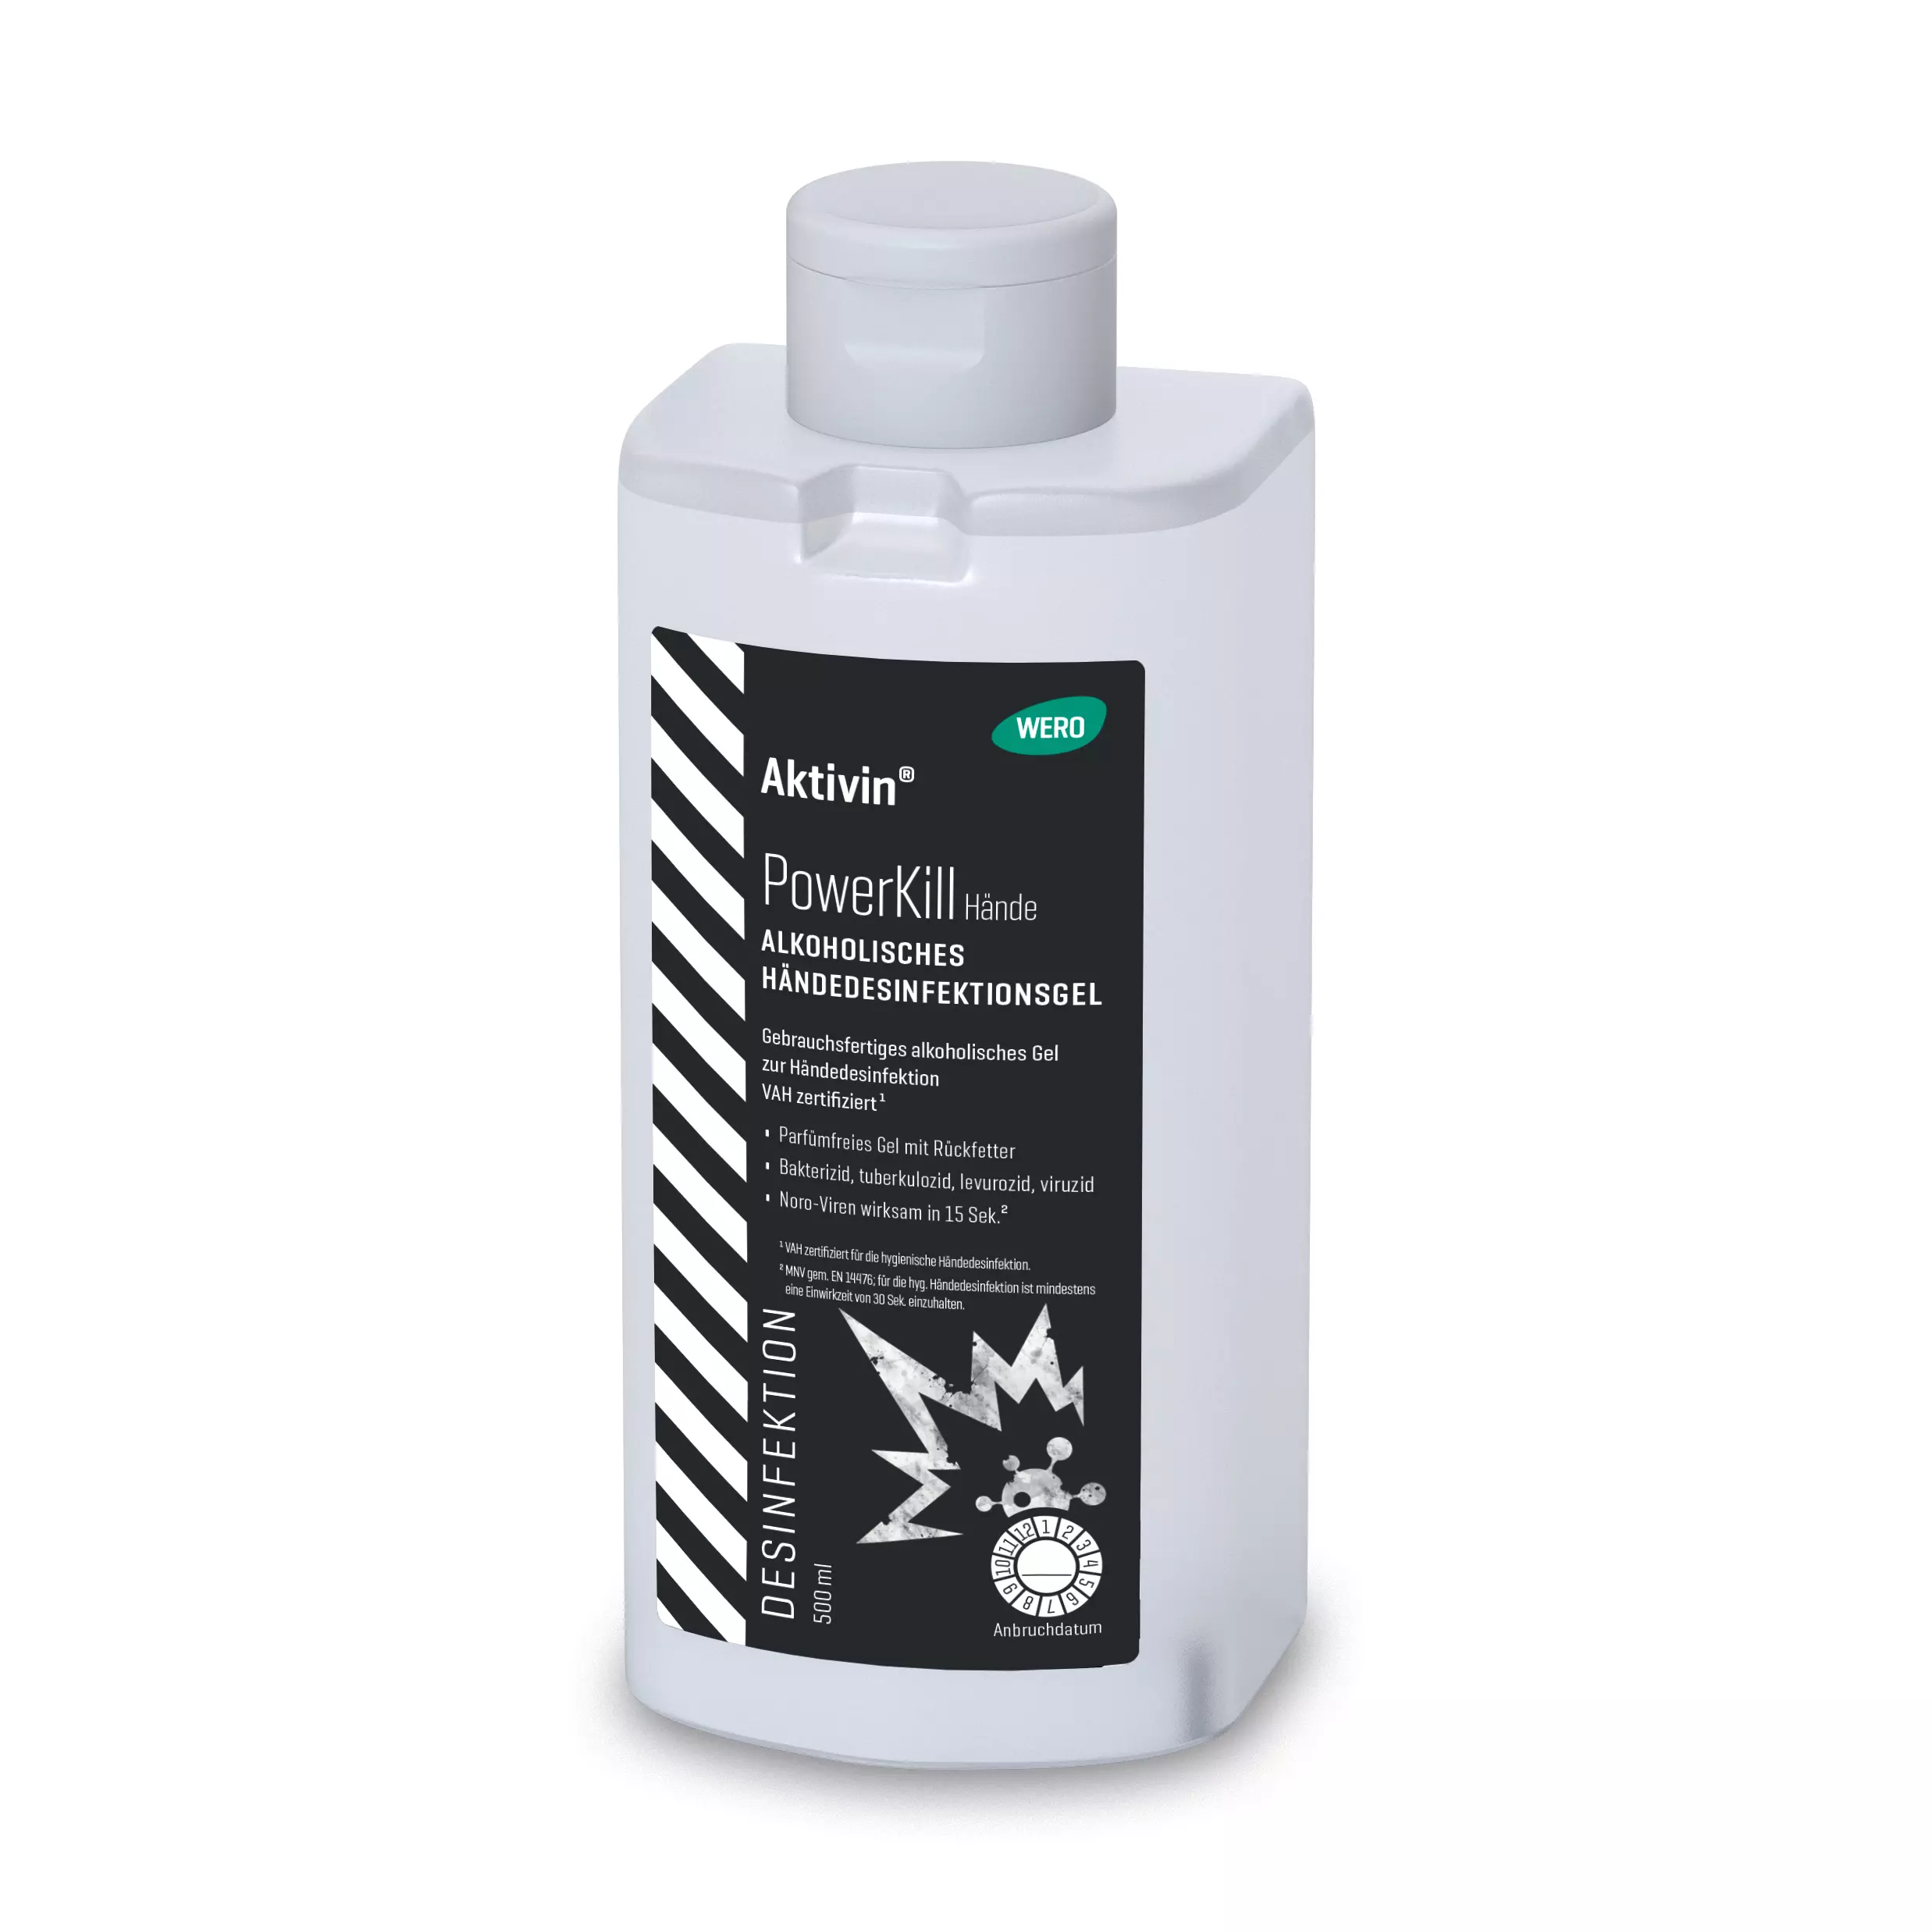 Hand disinfectant gel Aktivin® PowerKill - Euro bottle, 500 ml